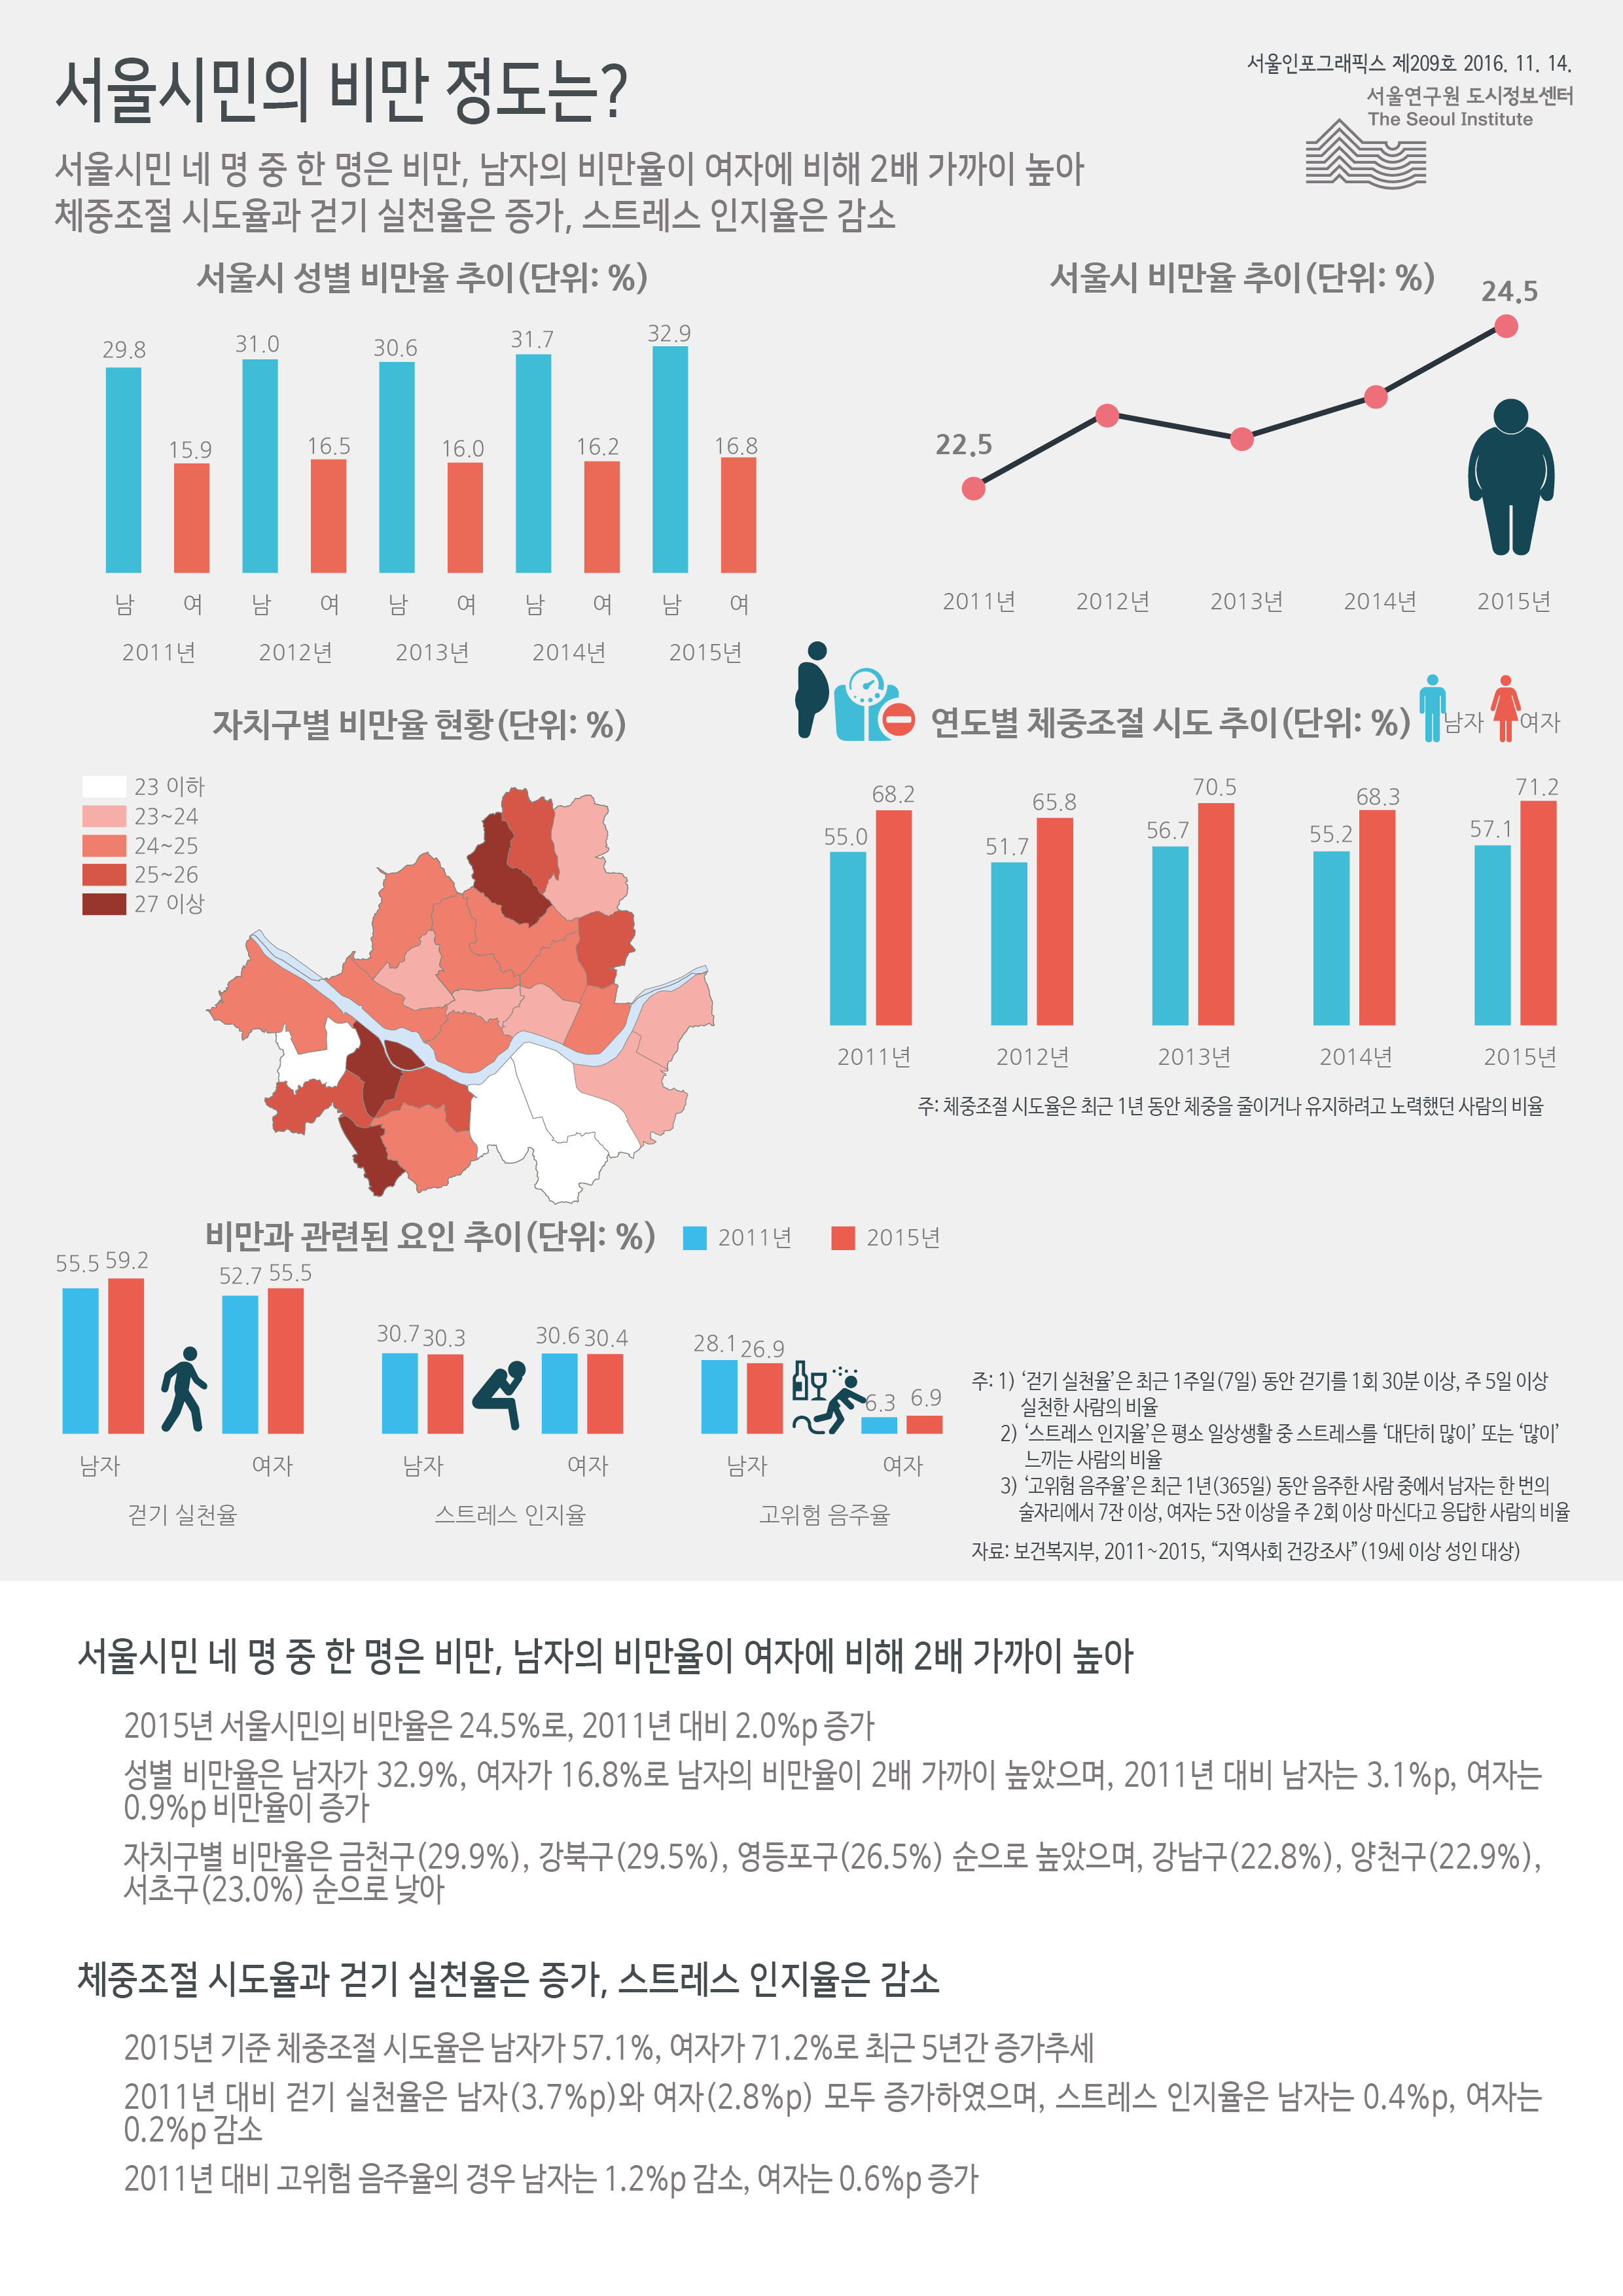 서울시민 네 명 중 한 명은 비만, 남자의 비만율이 여자에 비해 2배 가까이 높음. 체중조절 시도율과 걷기 실천율은 증가, 스트레스 인지율은 감소함으로 정리될 수 있습니다. 인포그래픽으로 제공되는 그래픽은 하단에 표로 자세히 제공됩니다.